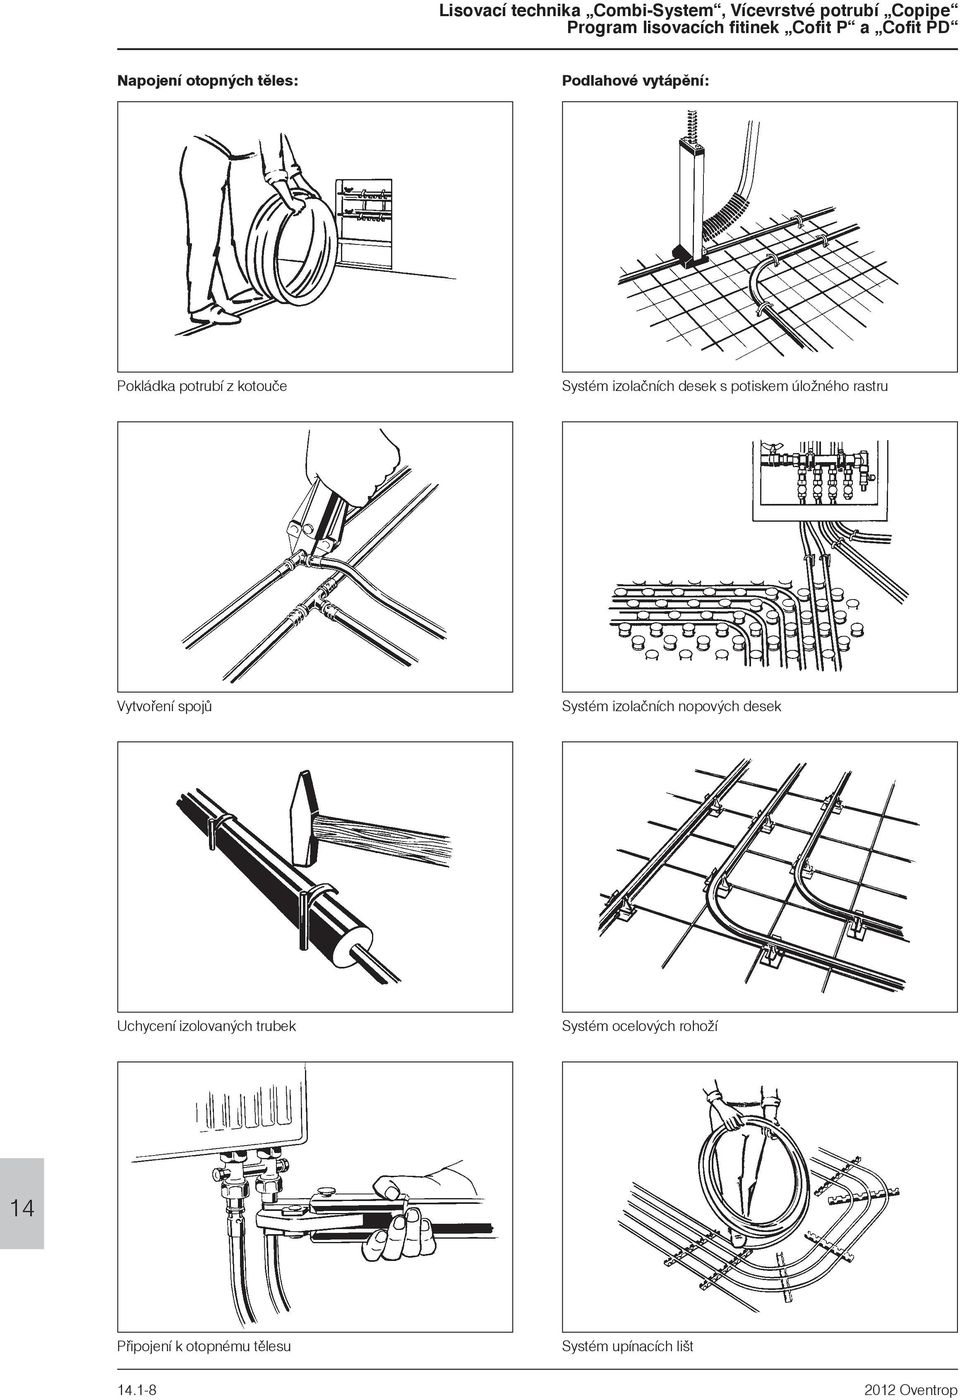 izolačních nopových desek Uchycení izolovaných trubek Systém ocelových